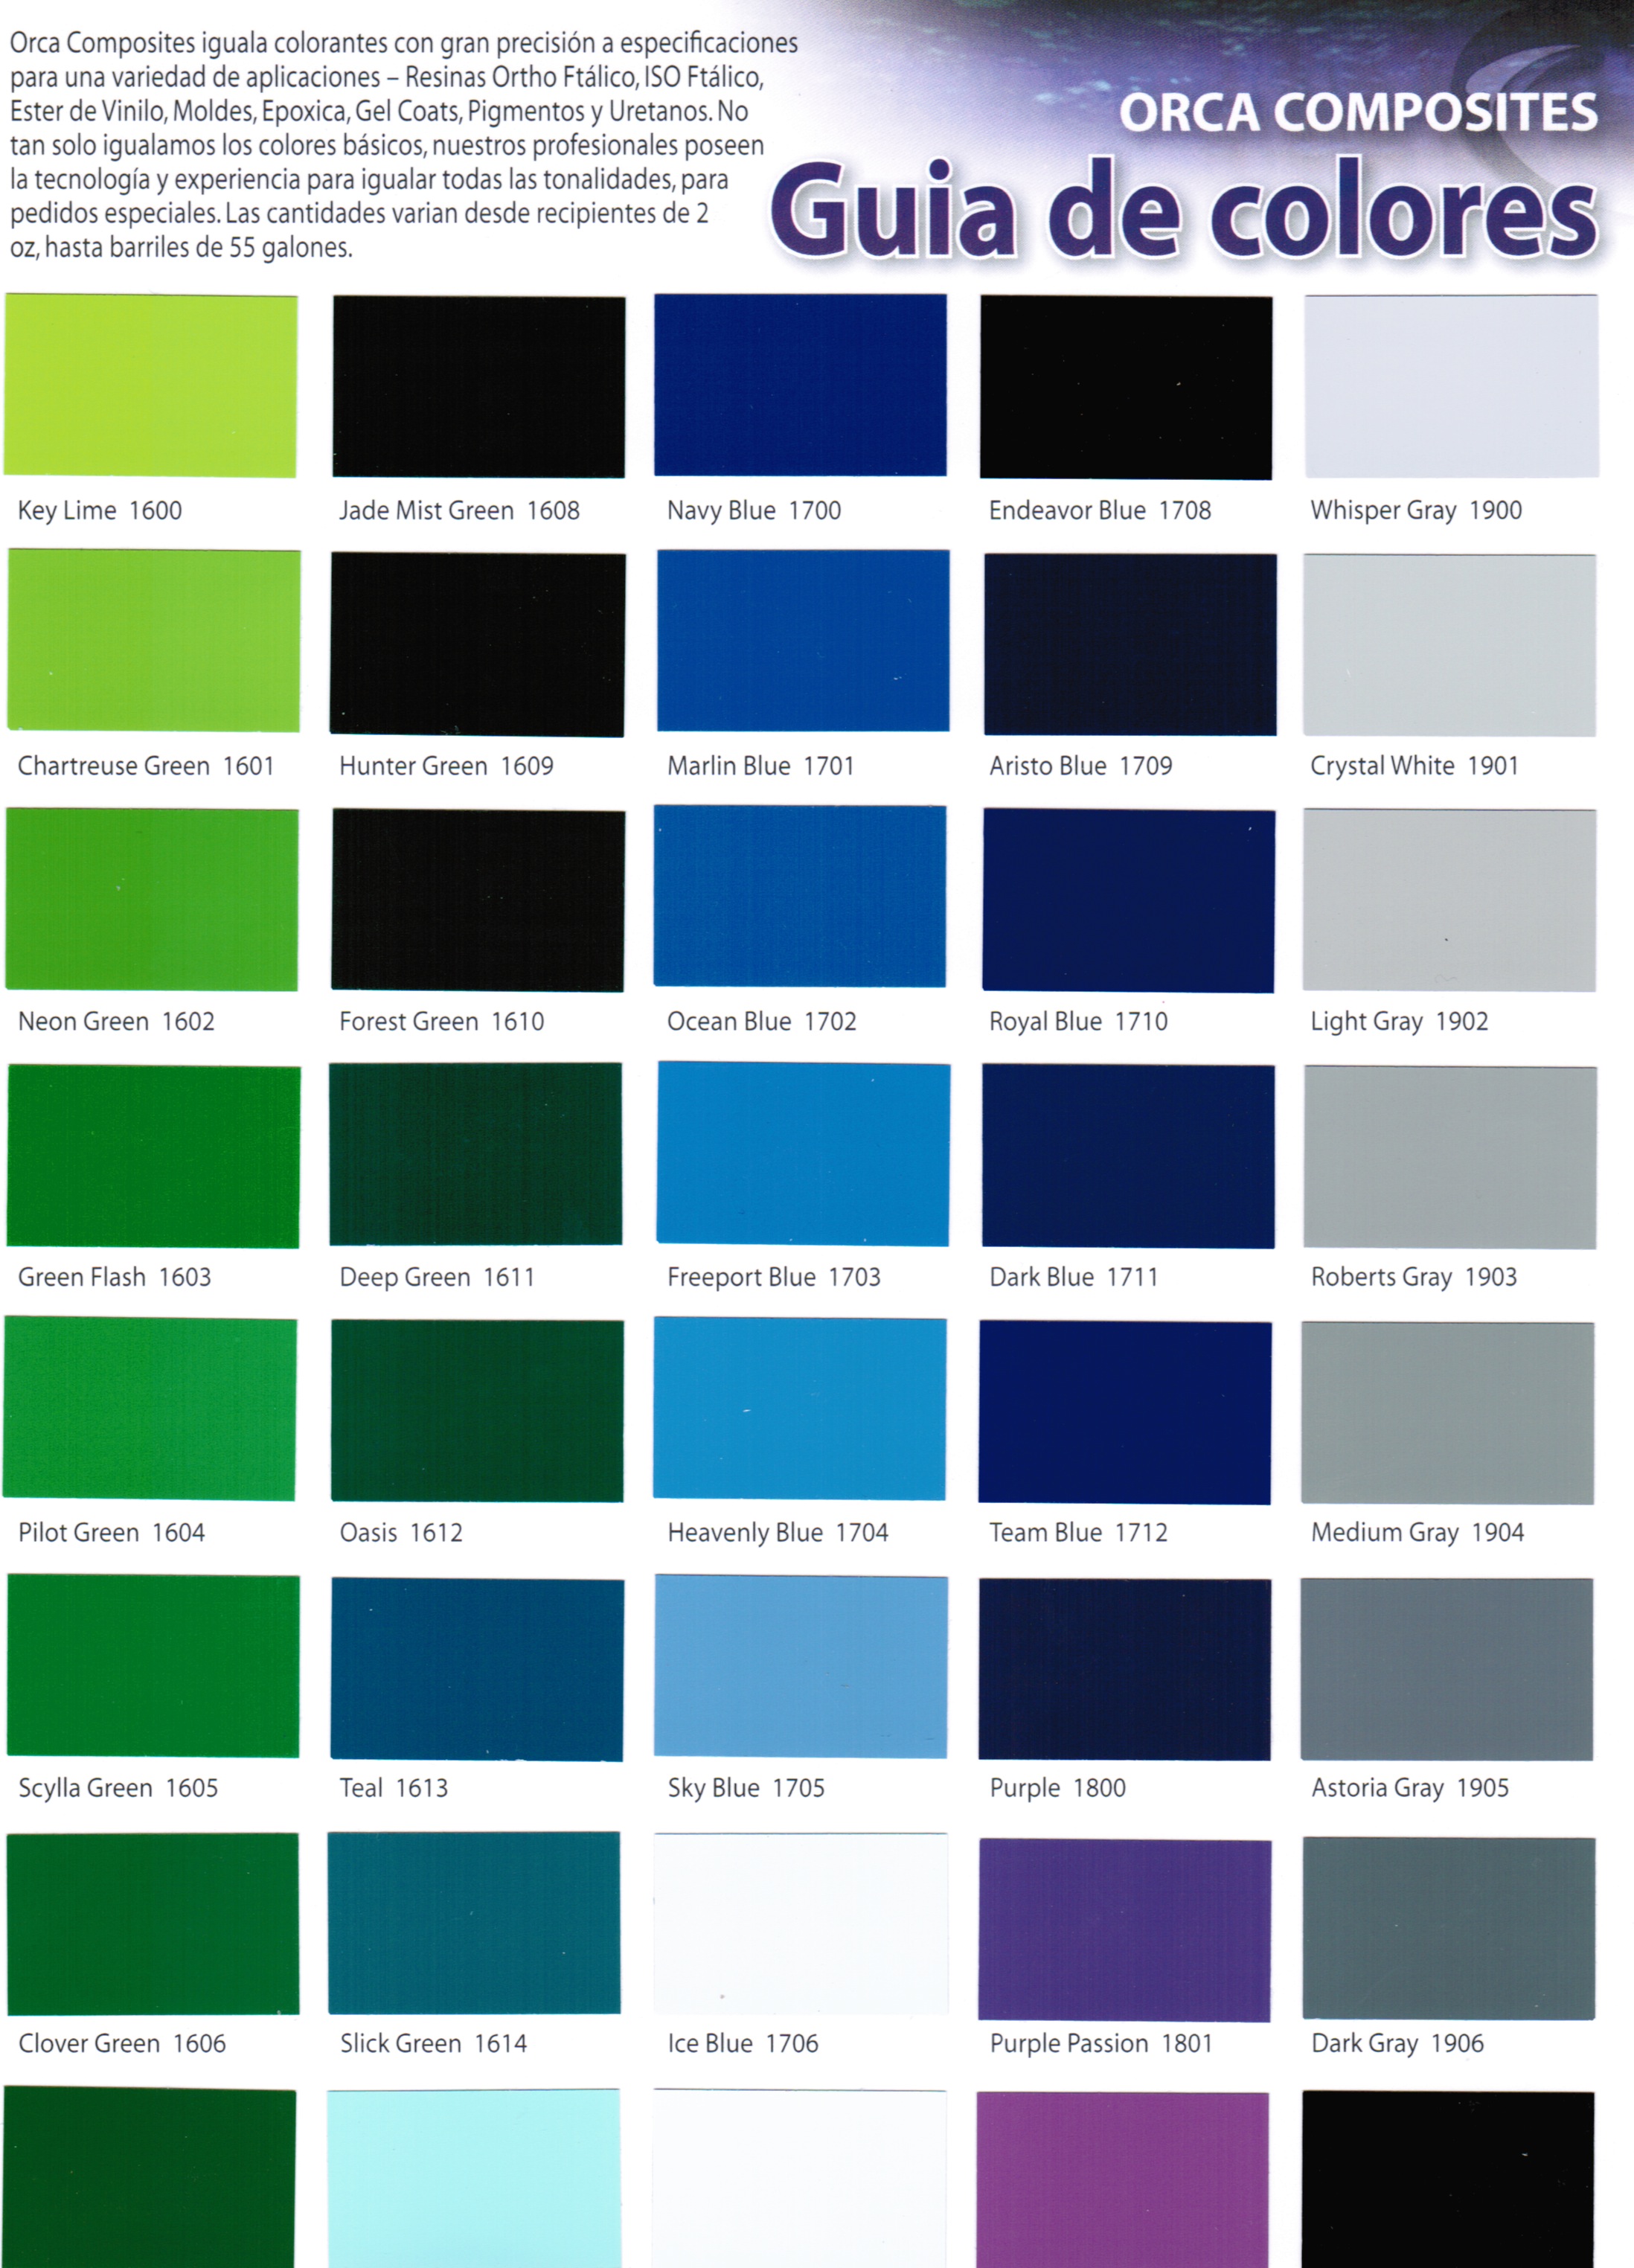 John Deere Paint Color Chart